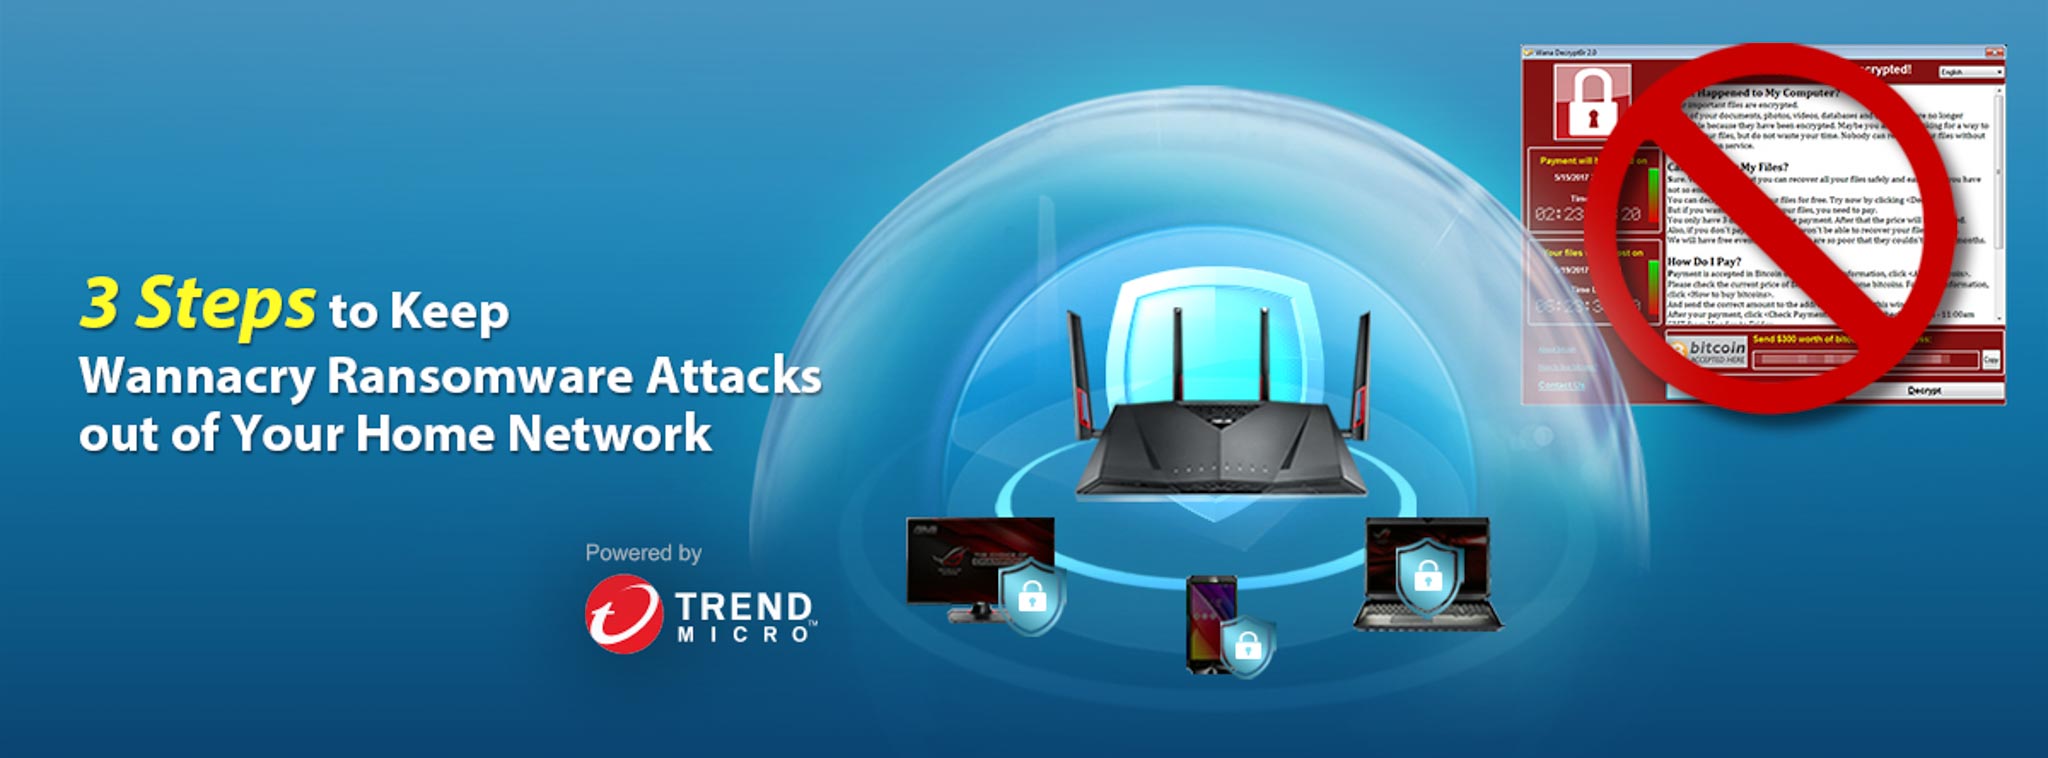 ASUS hợp tác với Trendmicro phát triển tính năng chặn ransomware Wannacry ngay từ router